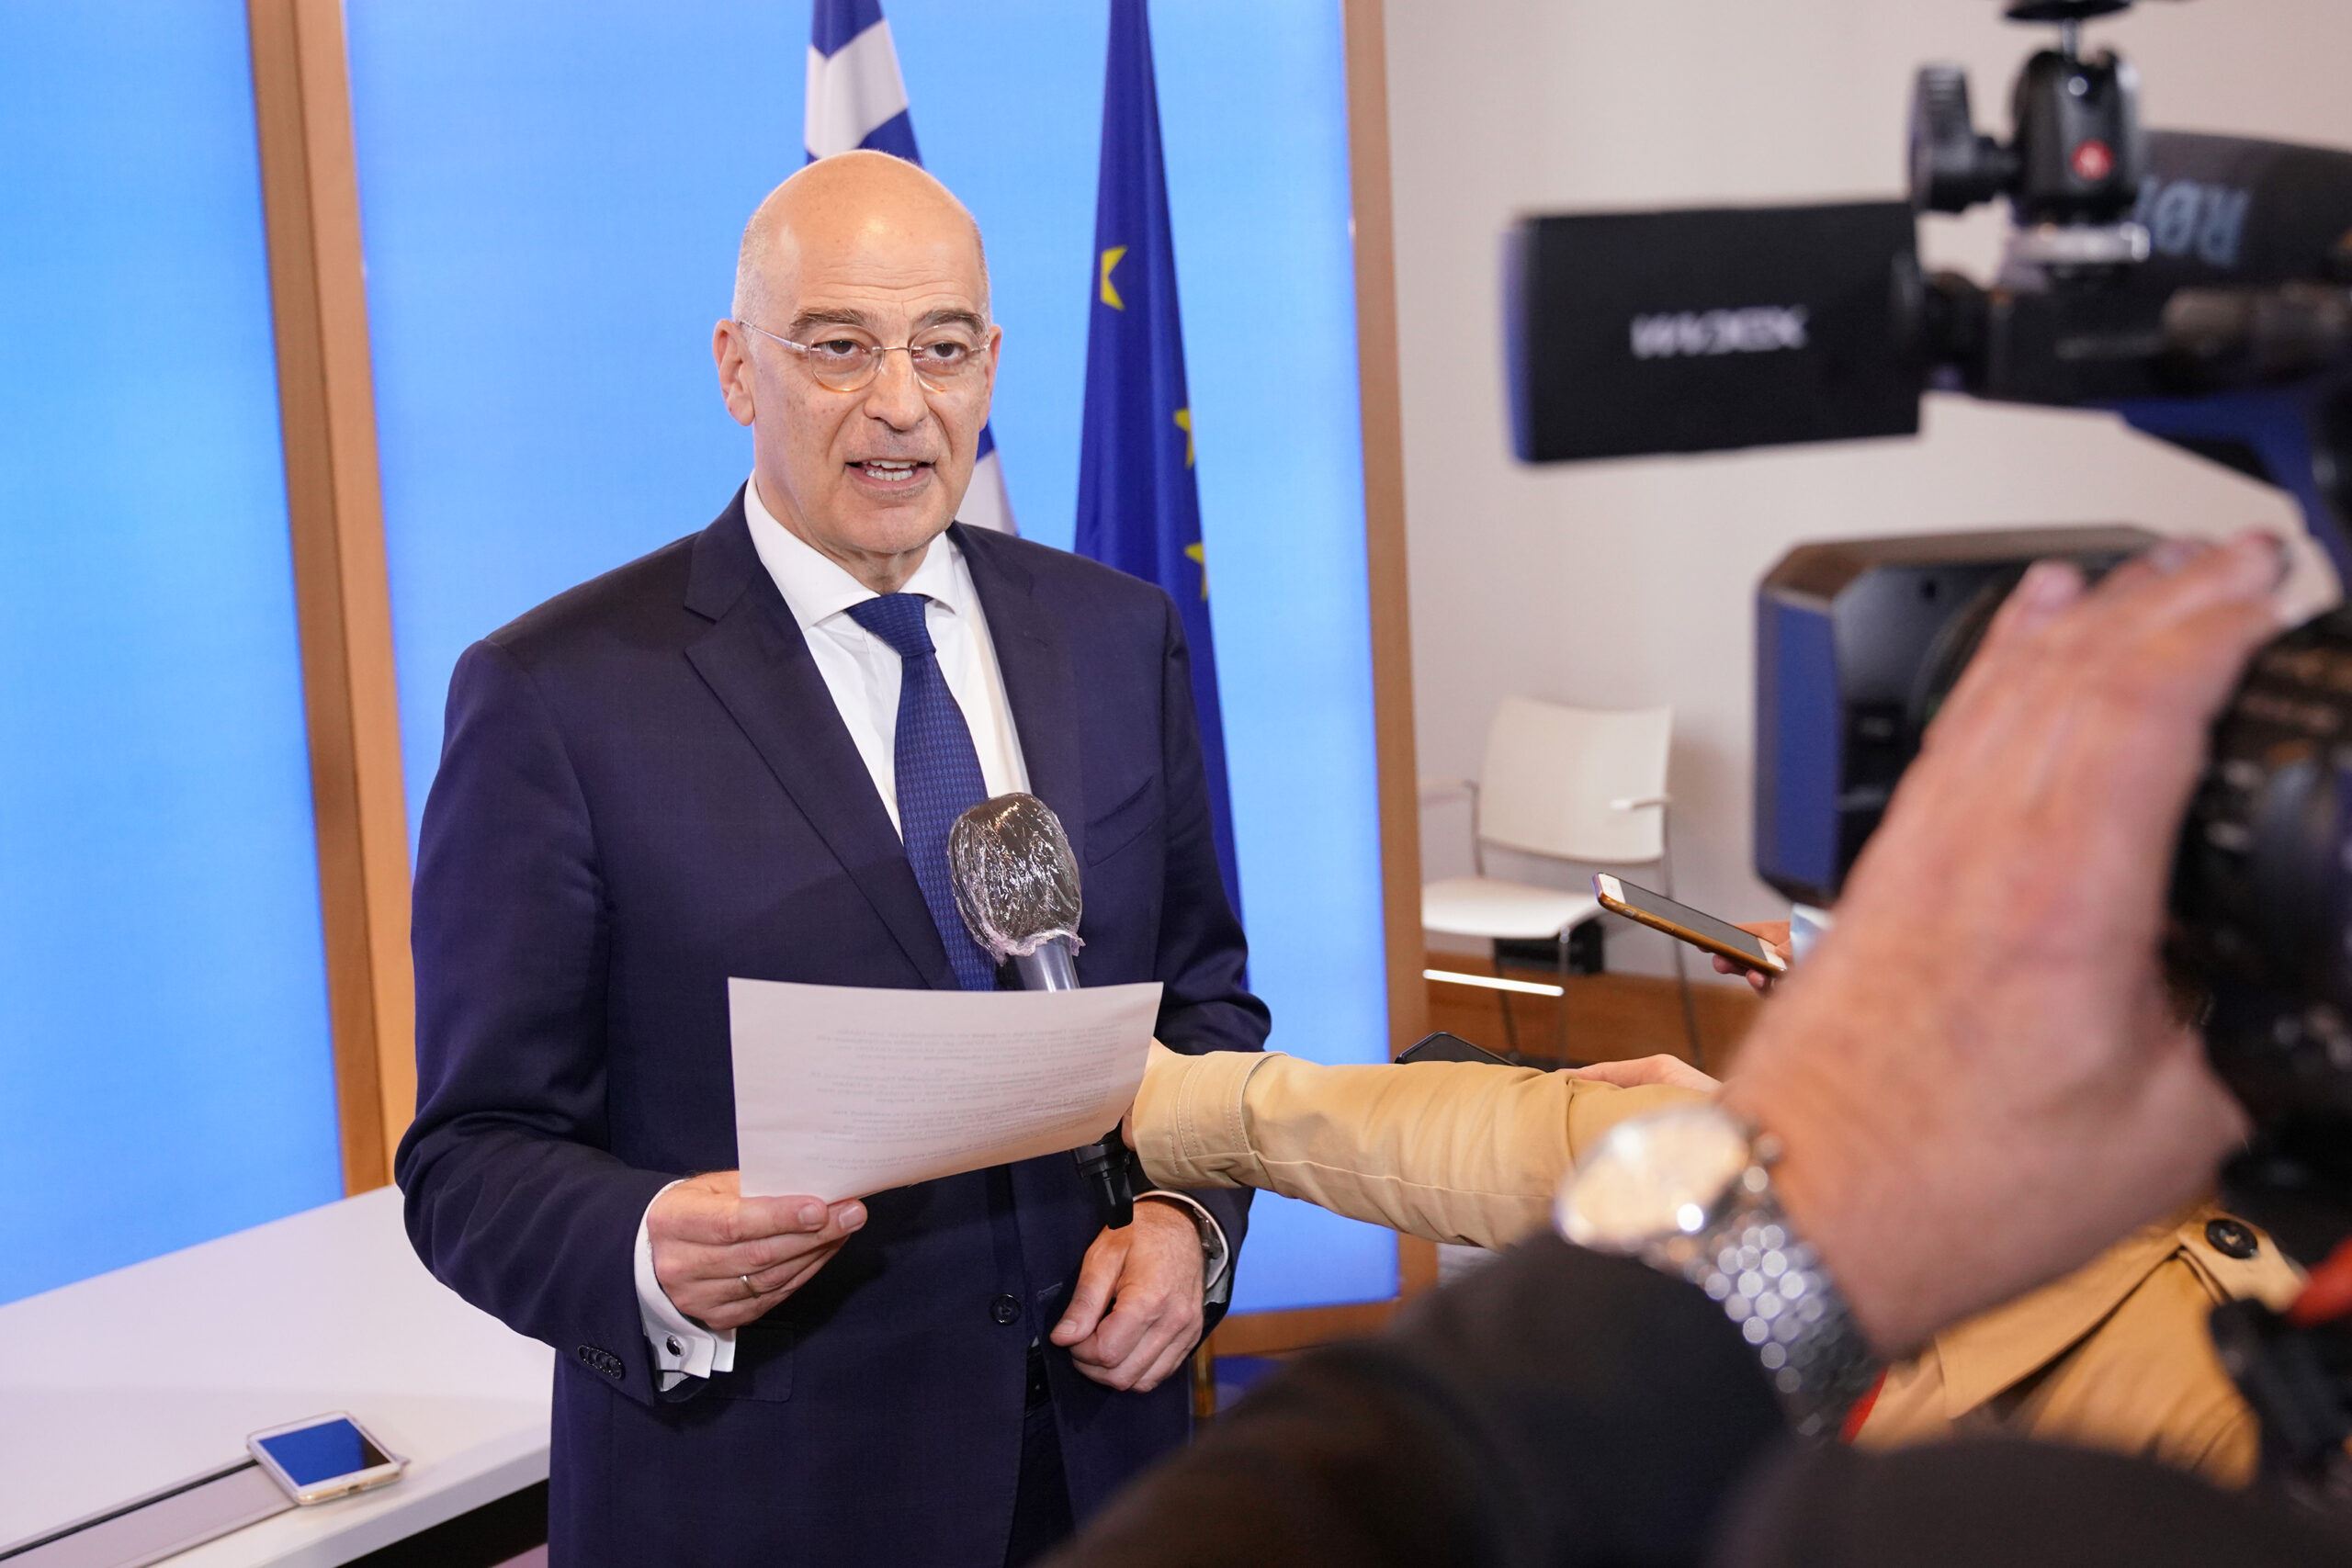 Δηλώσεις από την επίσκεψη του Υπουργού Εξωτερικών, Νίκου Δένδια, στη Γαλλία και τη συμμετοχή του στο Συμβούλιο Εξωτερικών Υποθέσεων (ΣΕΥ) της ΕΕ (Παρίσι, 15.06.2020)